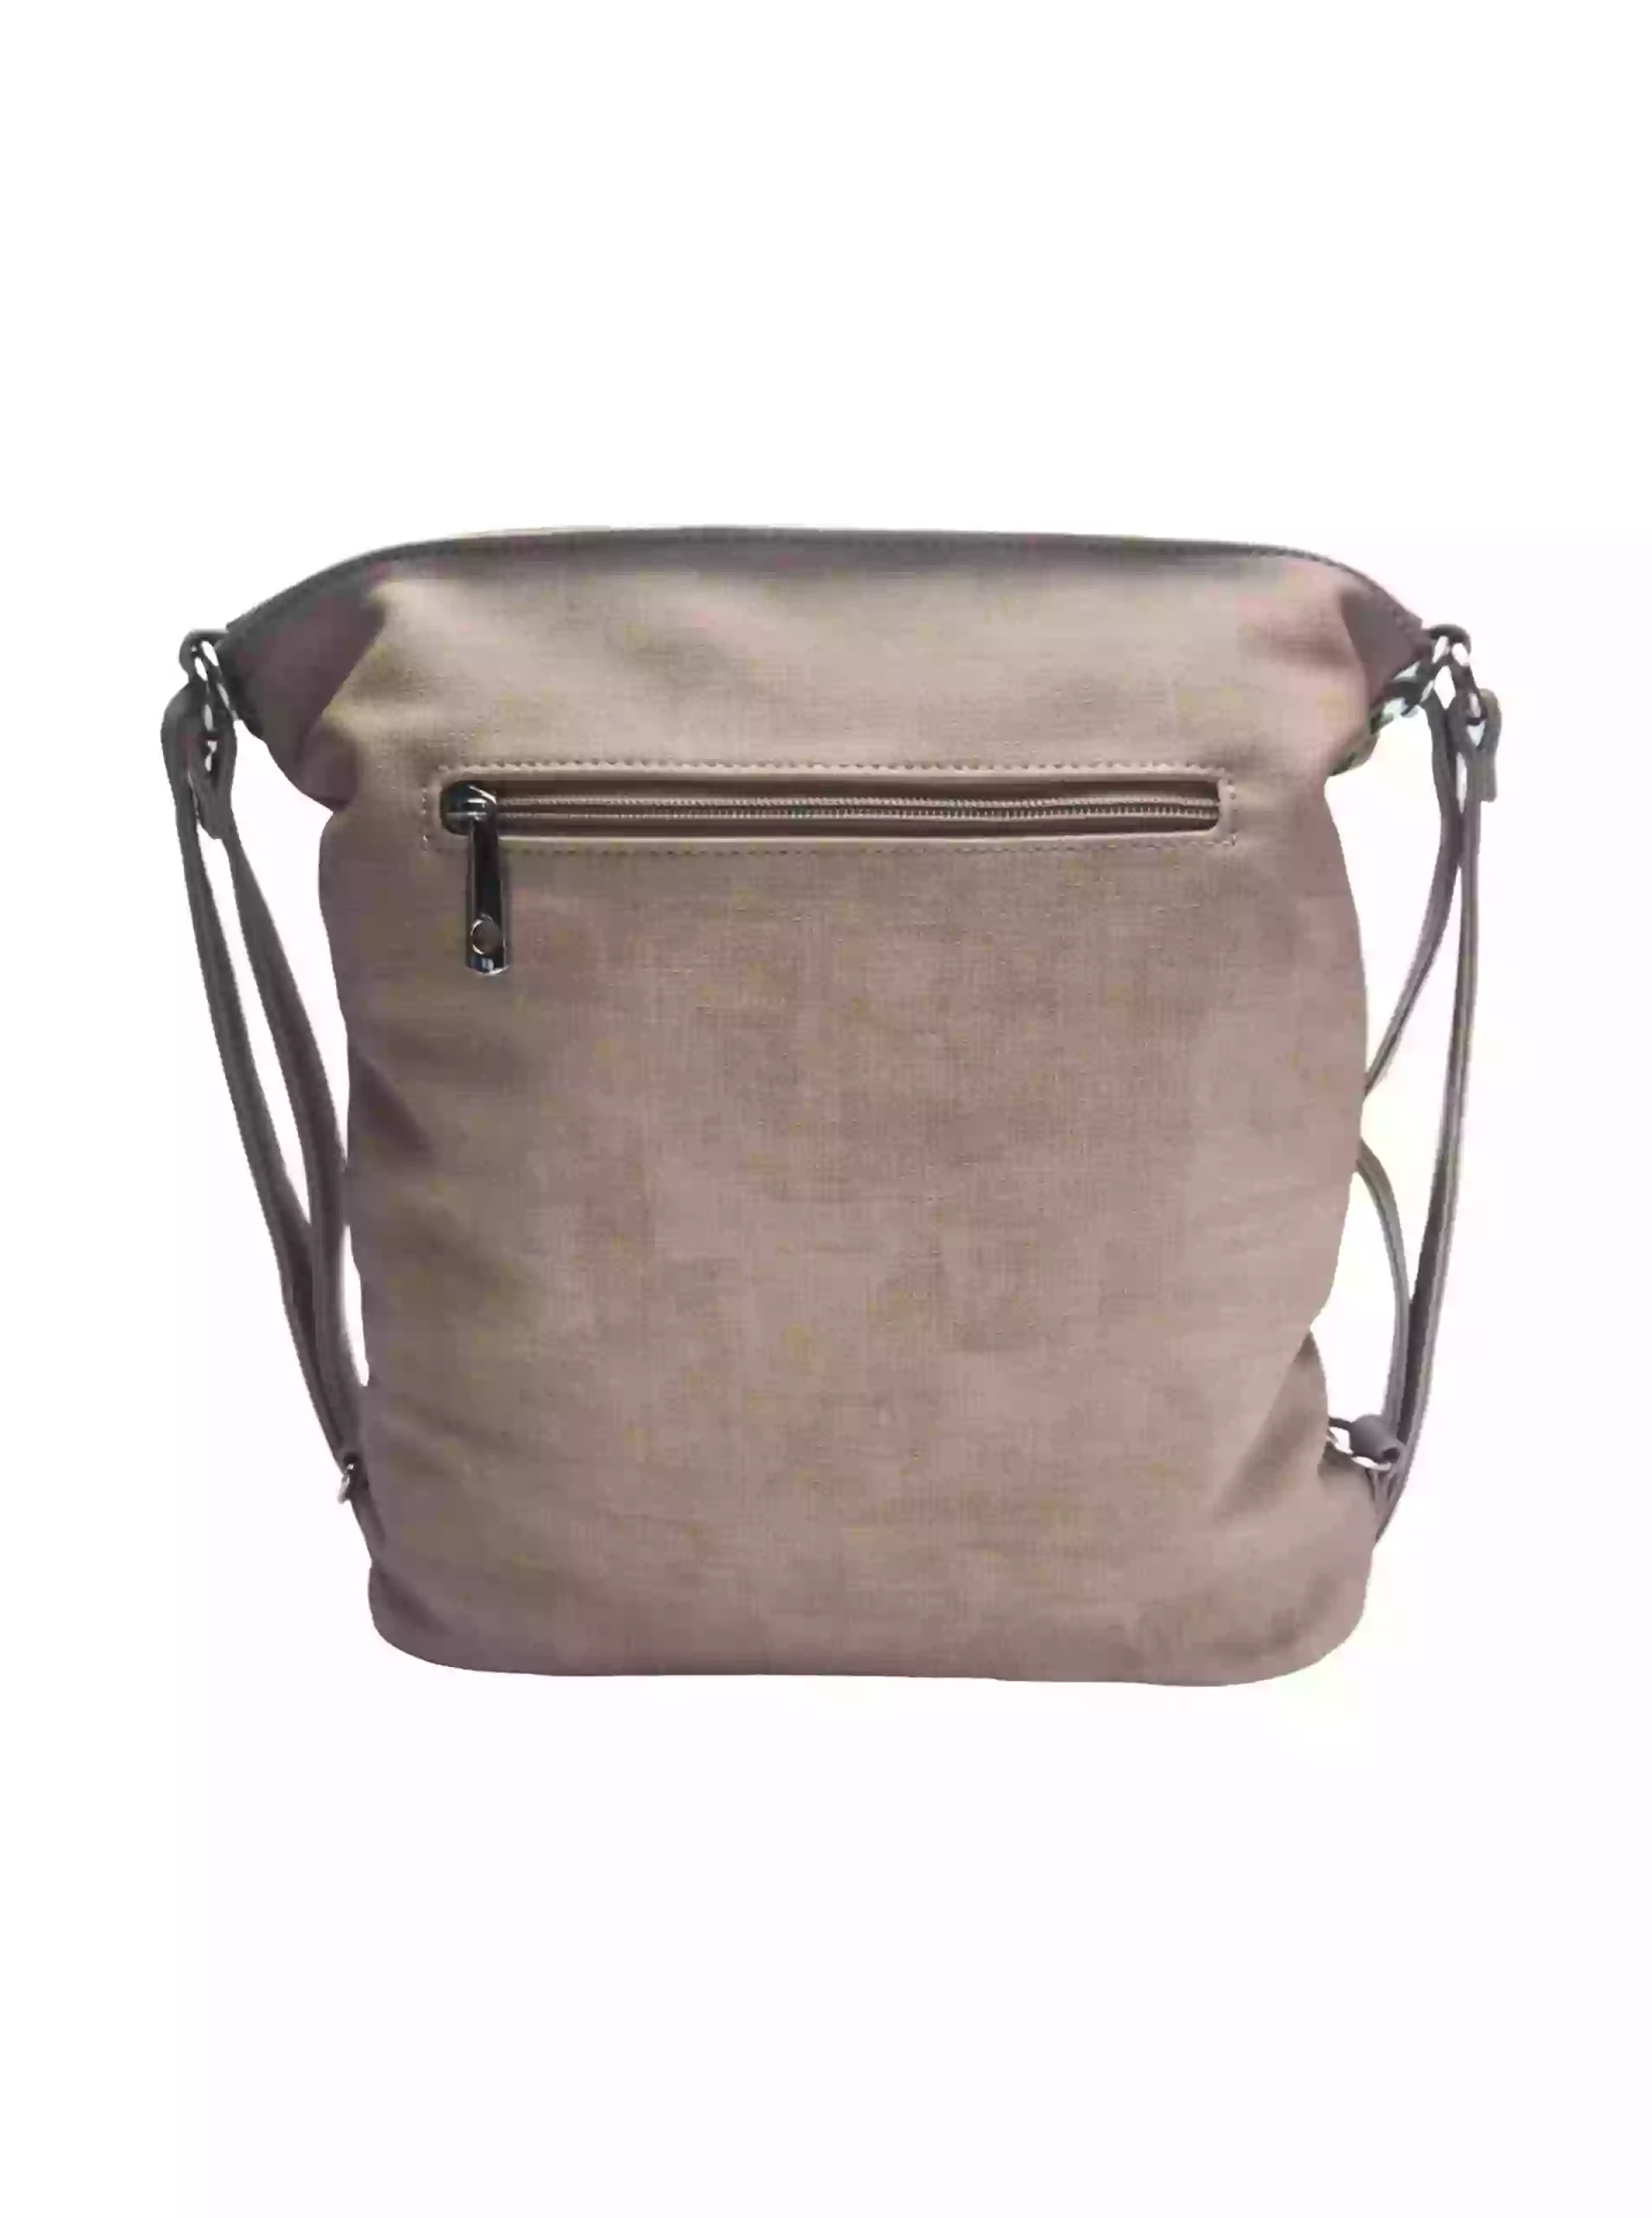 Střední světle hnědý kabelko-batoh 2v1 s praktickou kapsou, Tapple, H190062, zadní strana kabelko-batohu